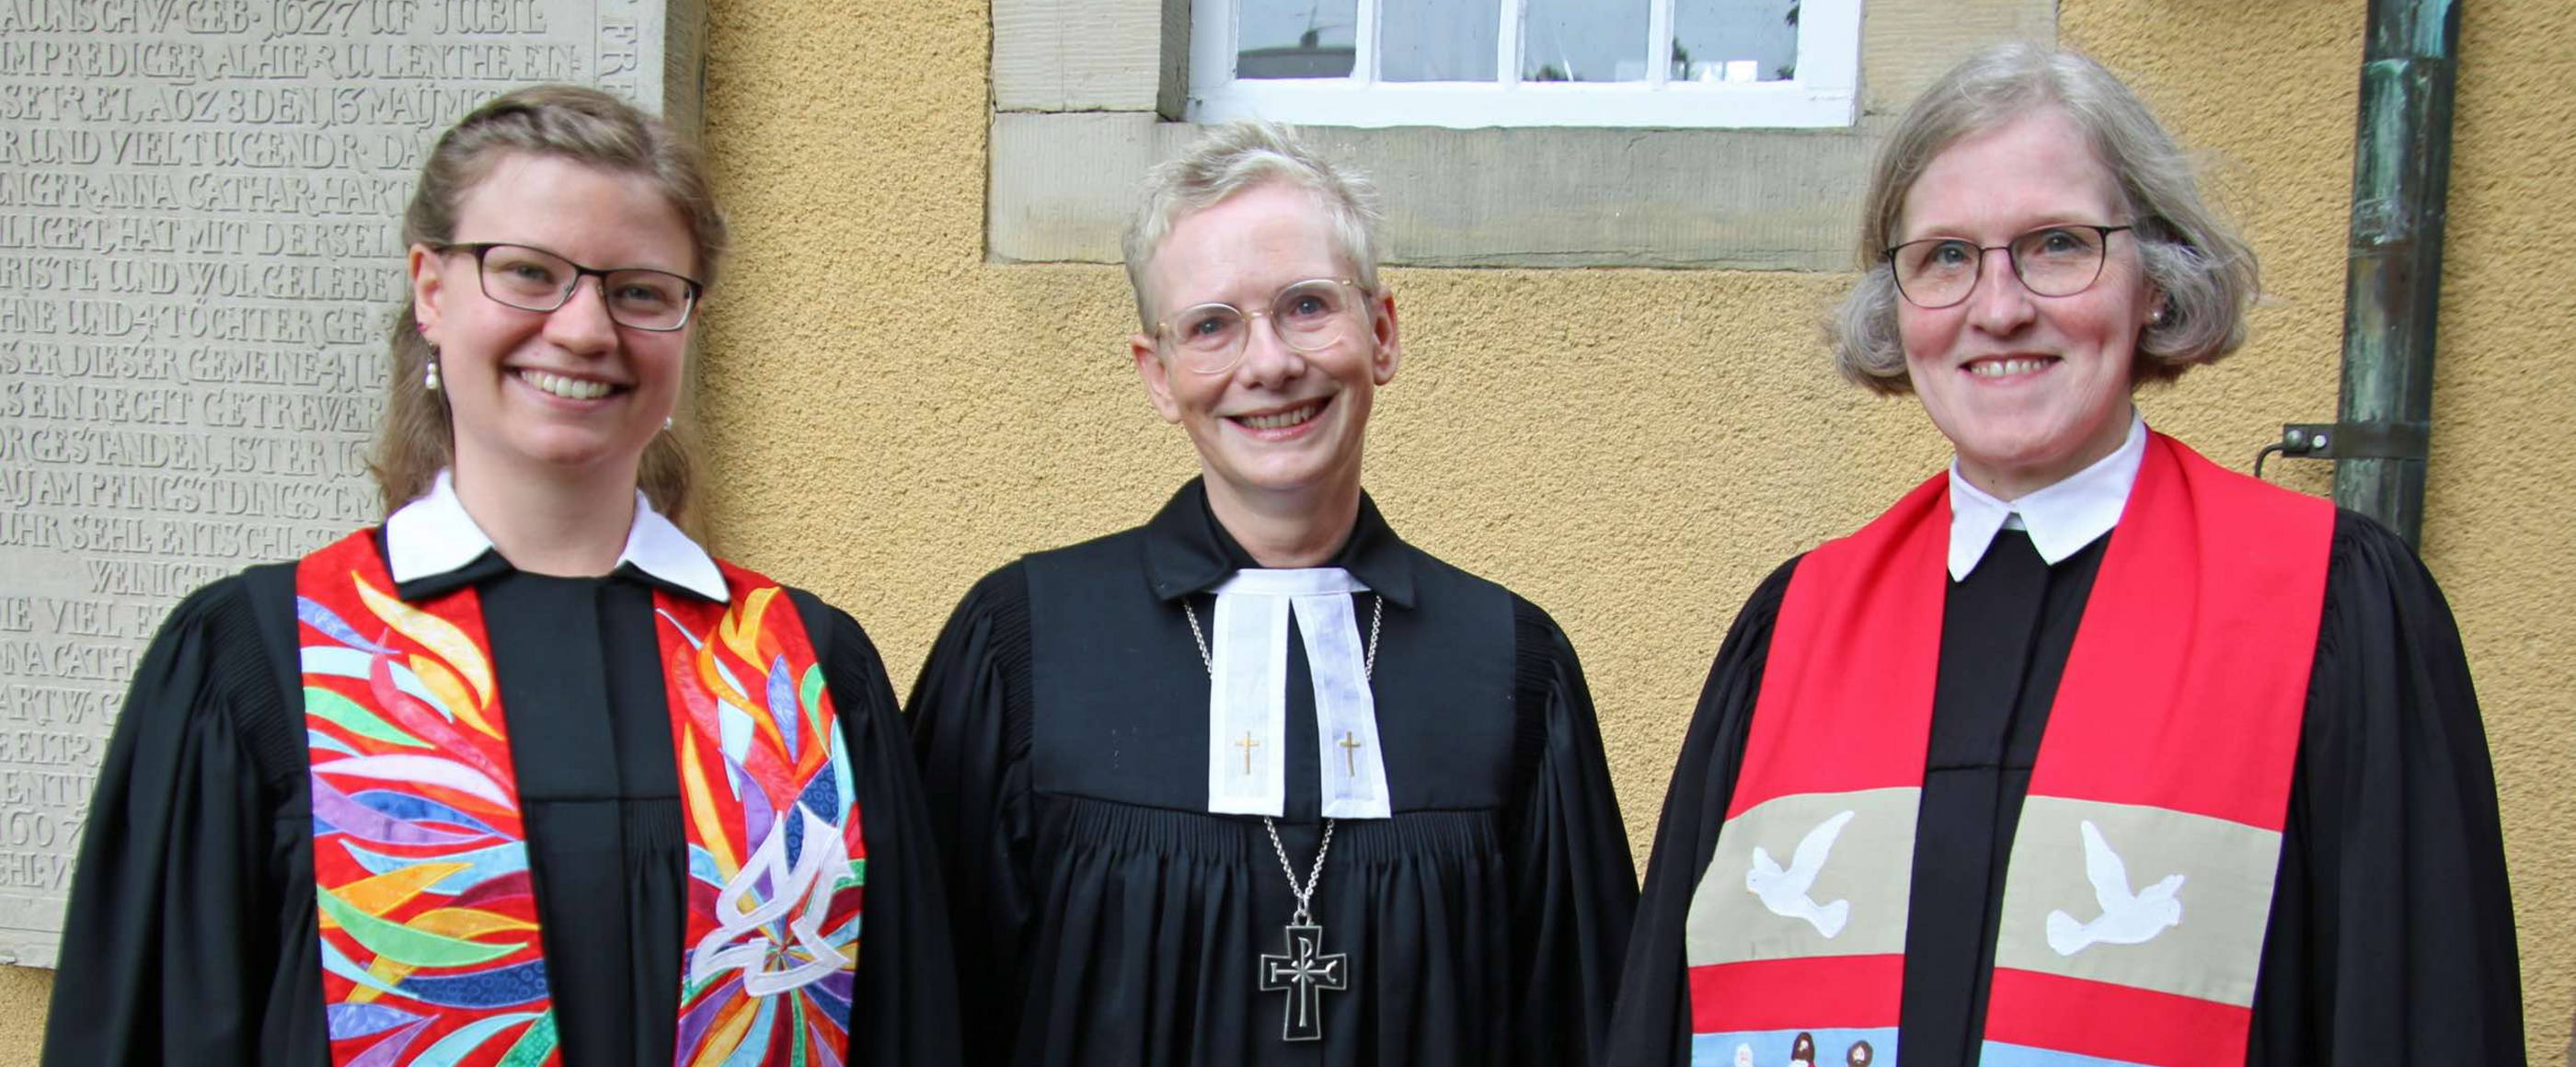 Auf dem Bild sind Laura Wolkenhauer, Regionalbischöfin Petra Bahr und Superintendentin Antje Marklein in Amtskleidung am Tag der Ordination zu sehen.